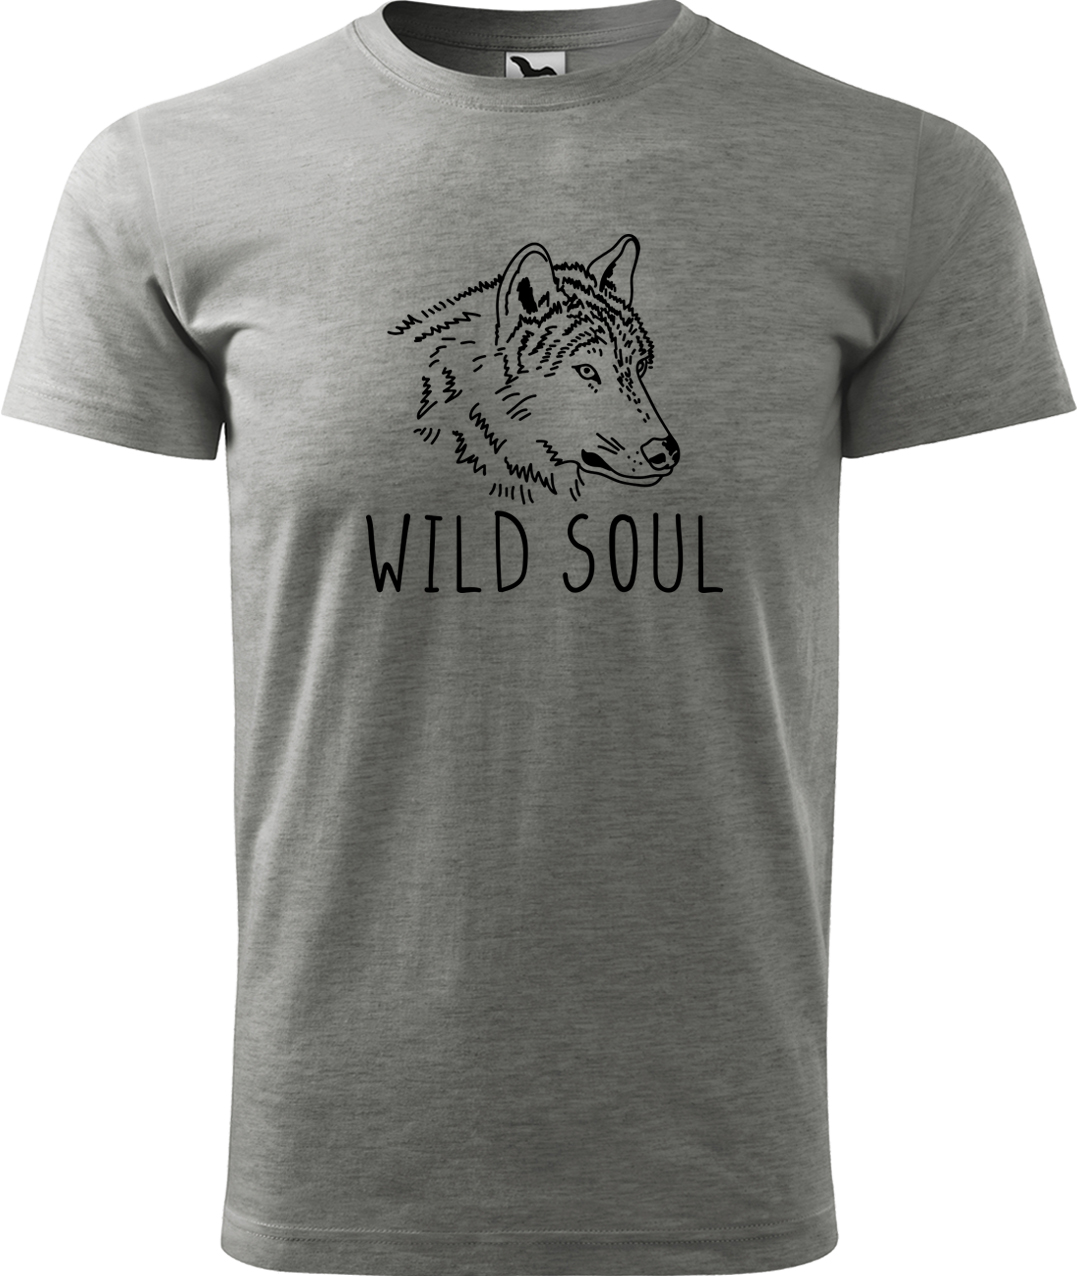 Pánské tričko s vlkem - Wild soul Velikost: S, Barva: Tmavě šedý melír (12), Střih: pánský